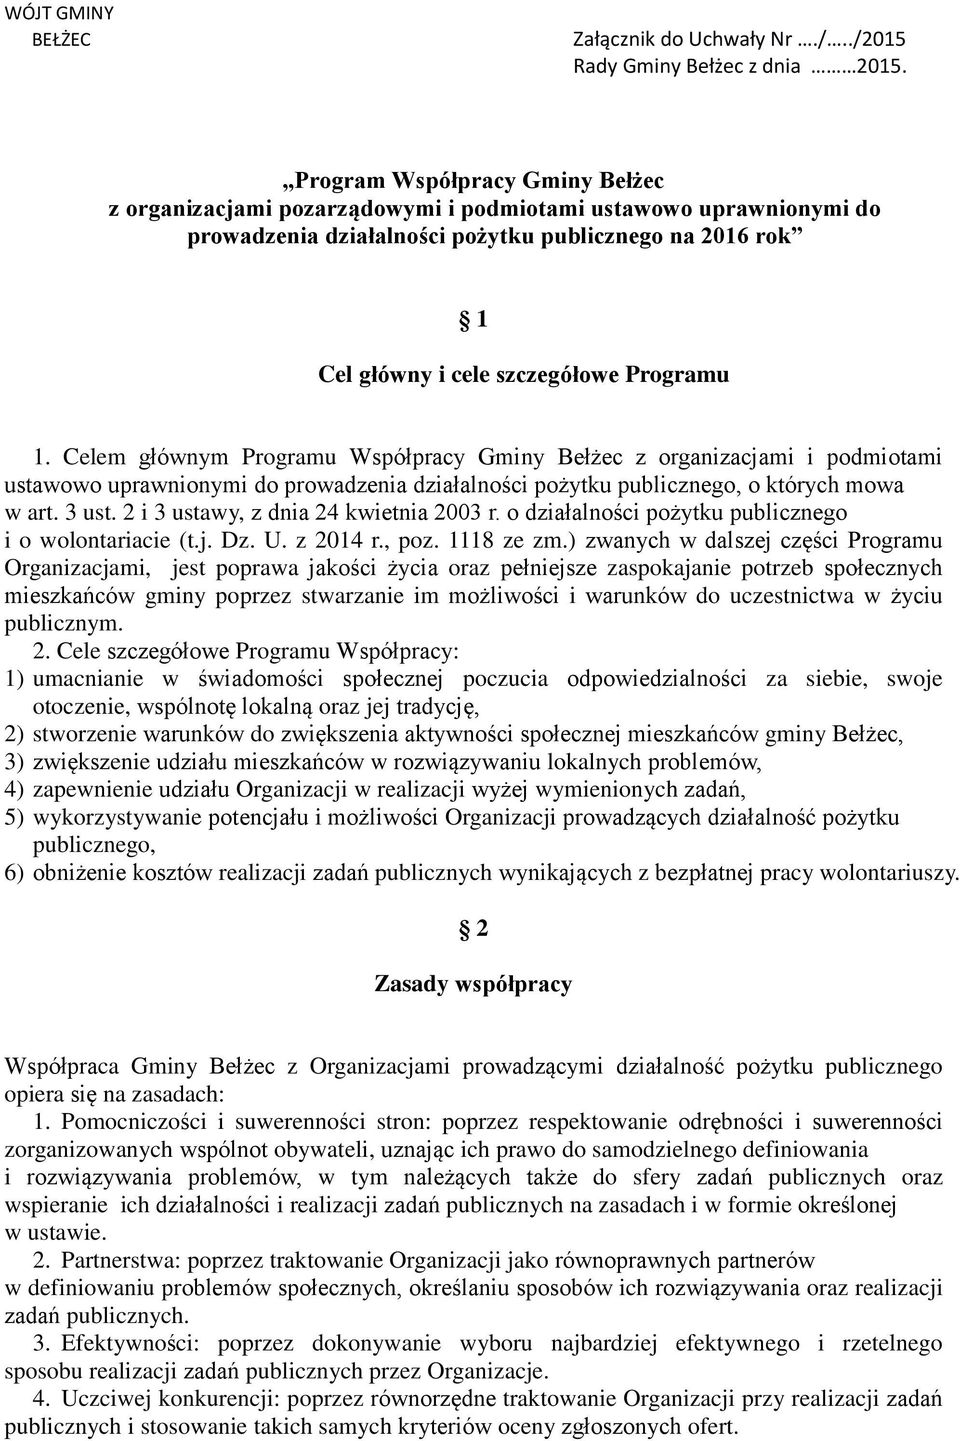 Celem głównym Programu Współpracy Gminy Bełżec z organizacjami i podmiotami ustawowo uprawnionymi do prowadzenia działalności pożytku publicznego, o których mowa w art. 3 ust.